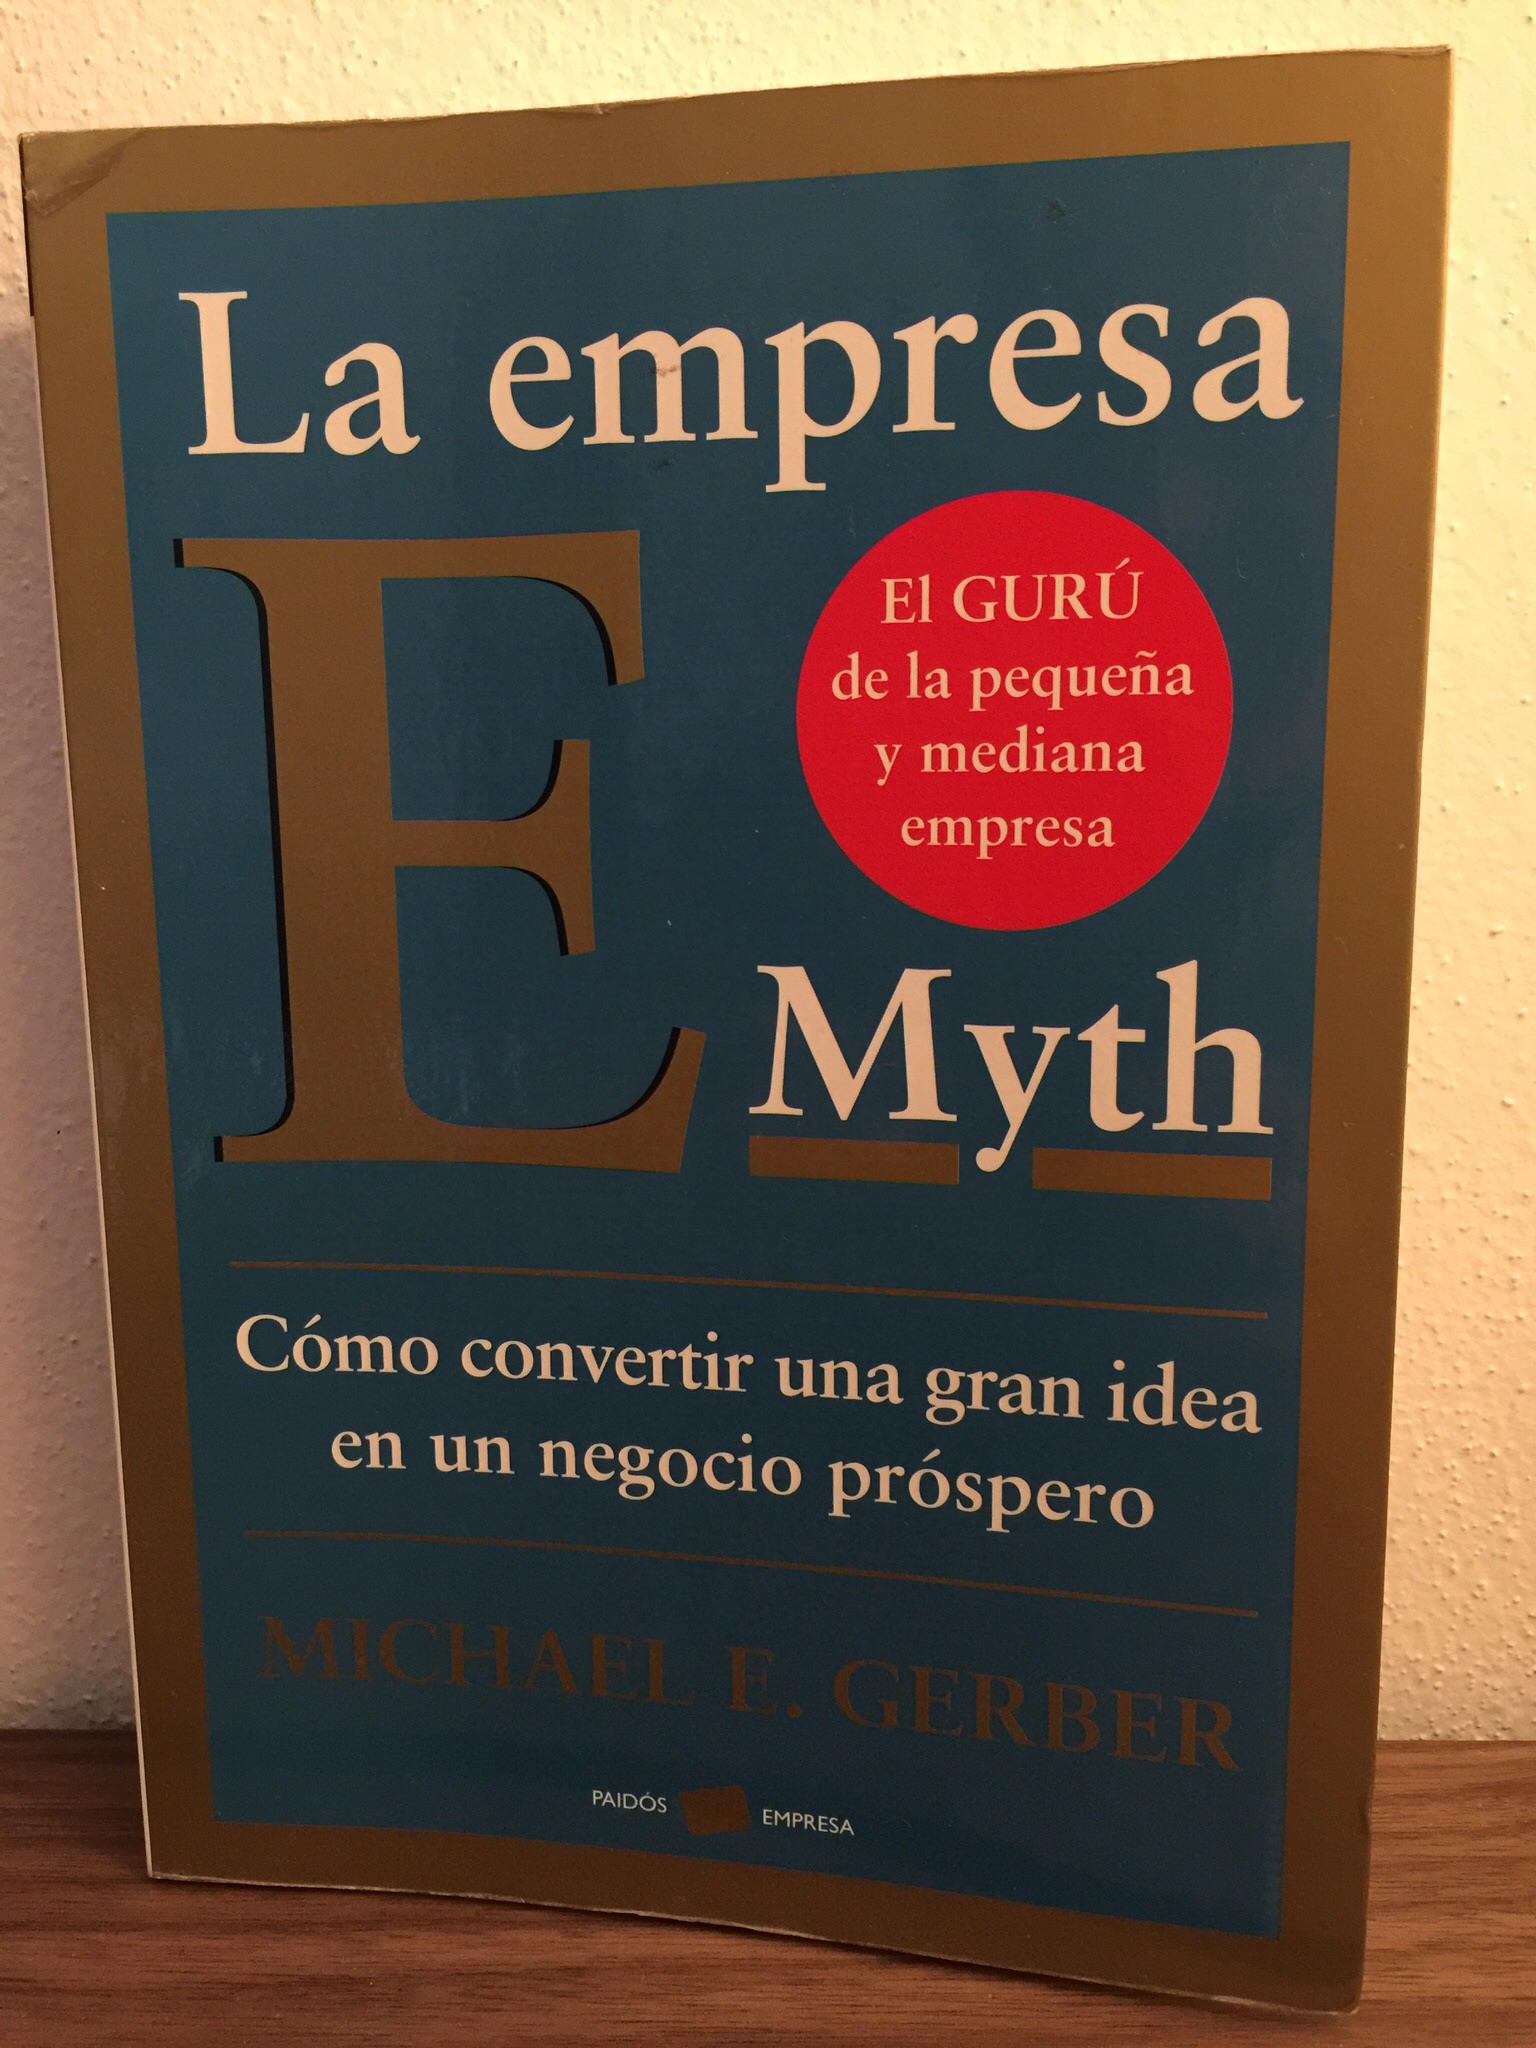 La empresa E Myth – Michael E Gerber